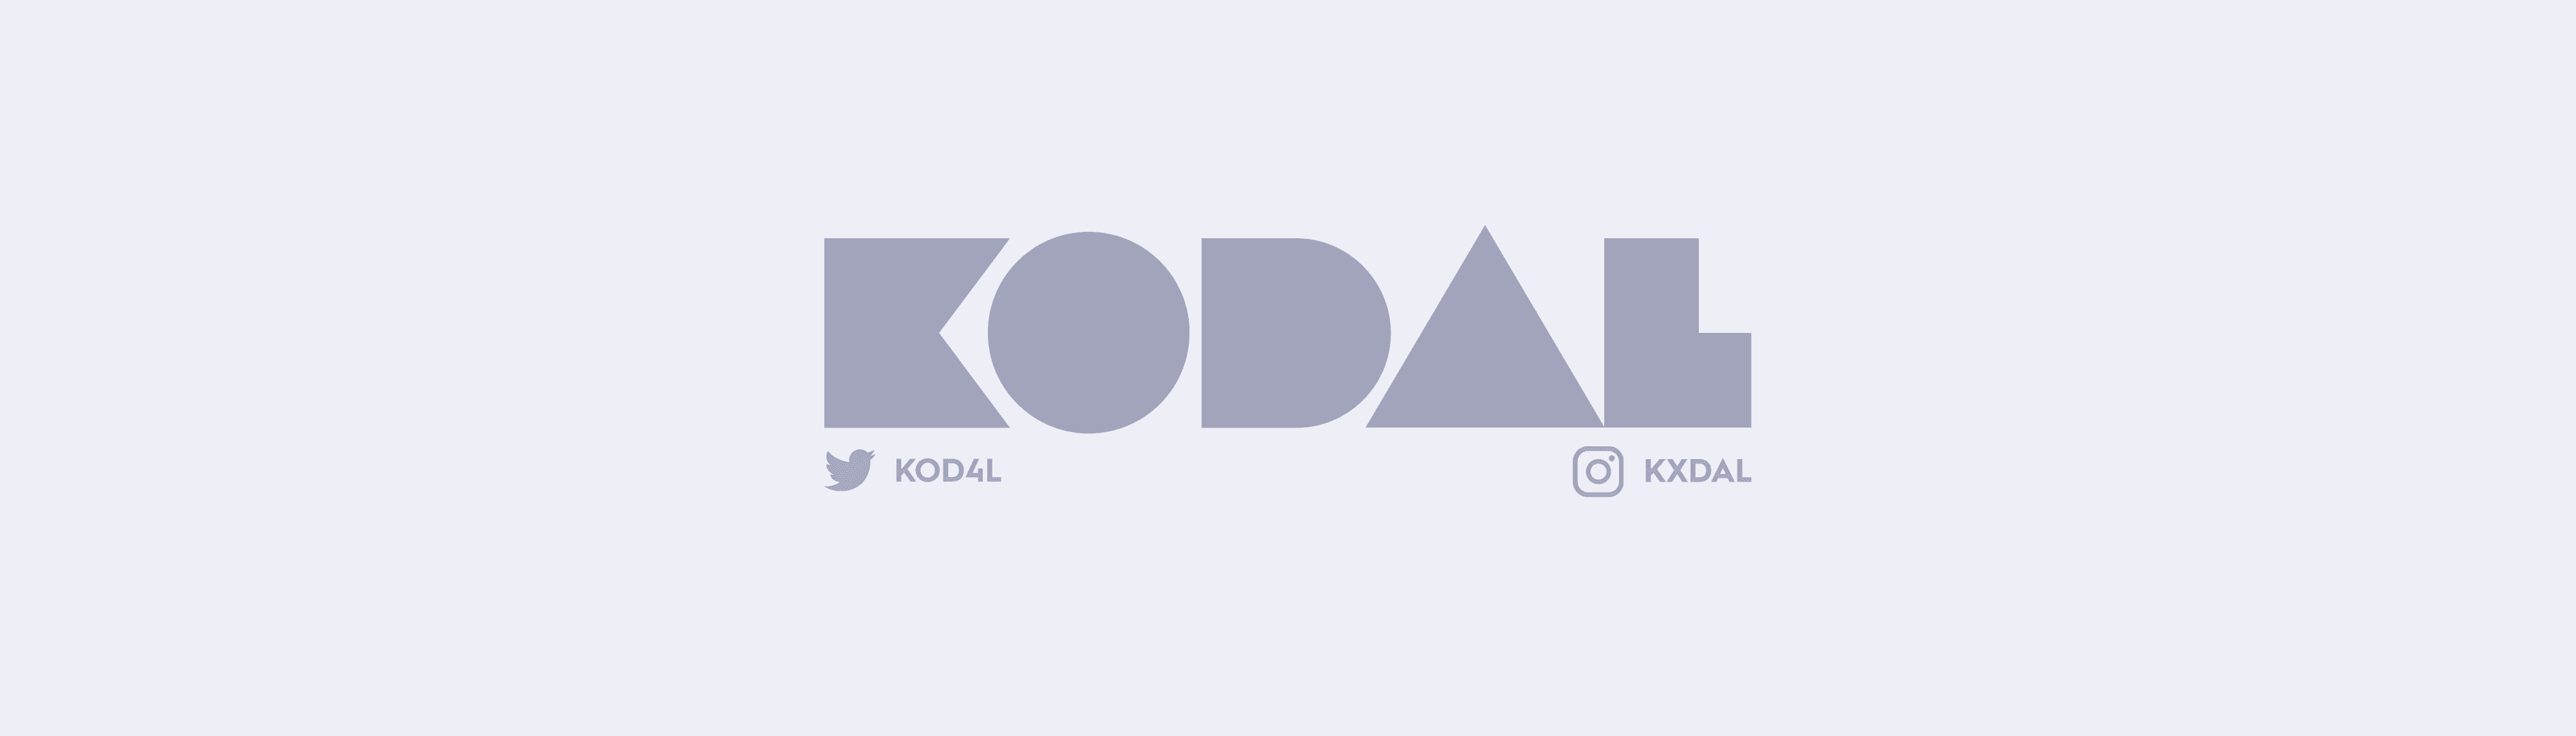 kodal banner